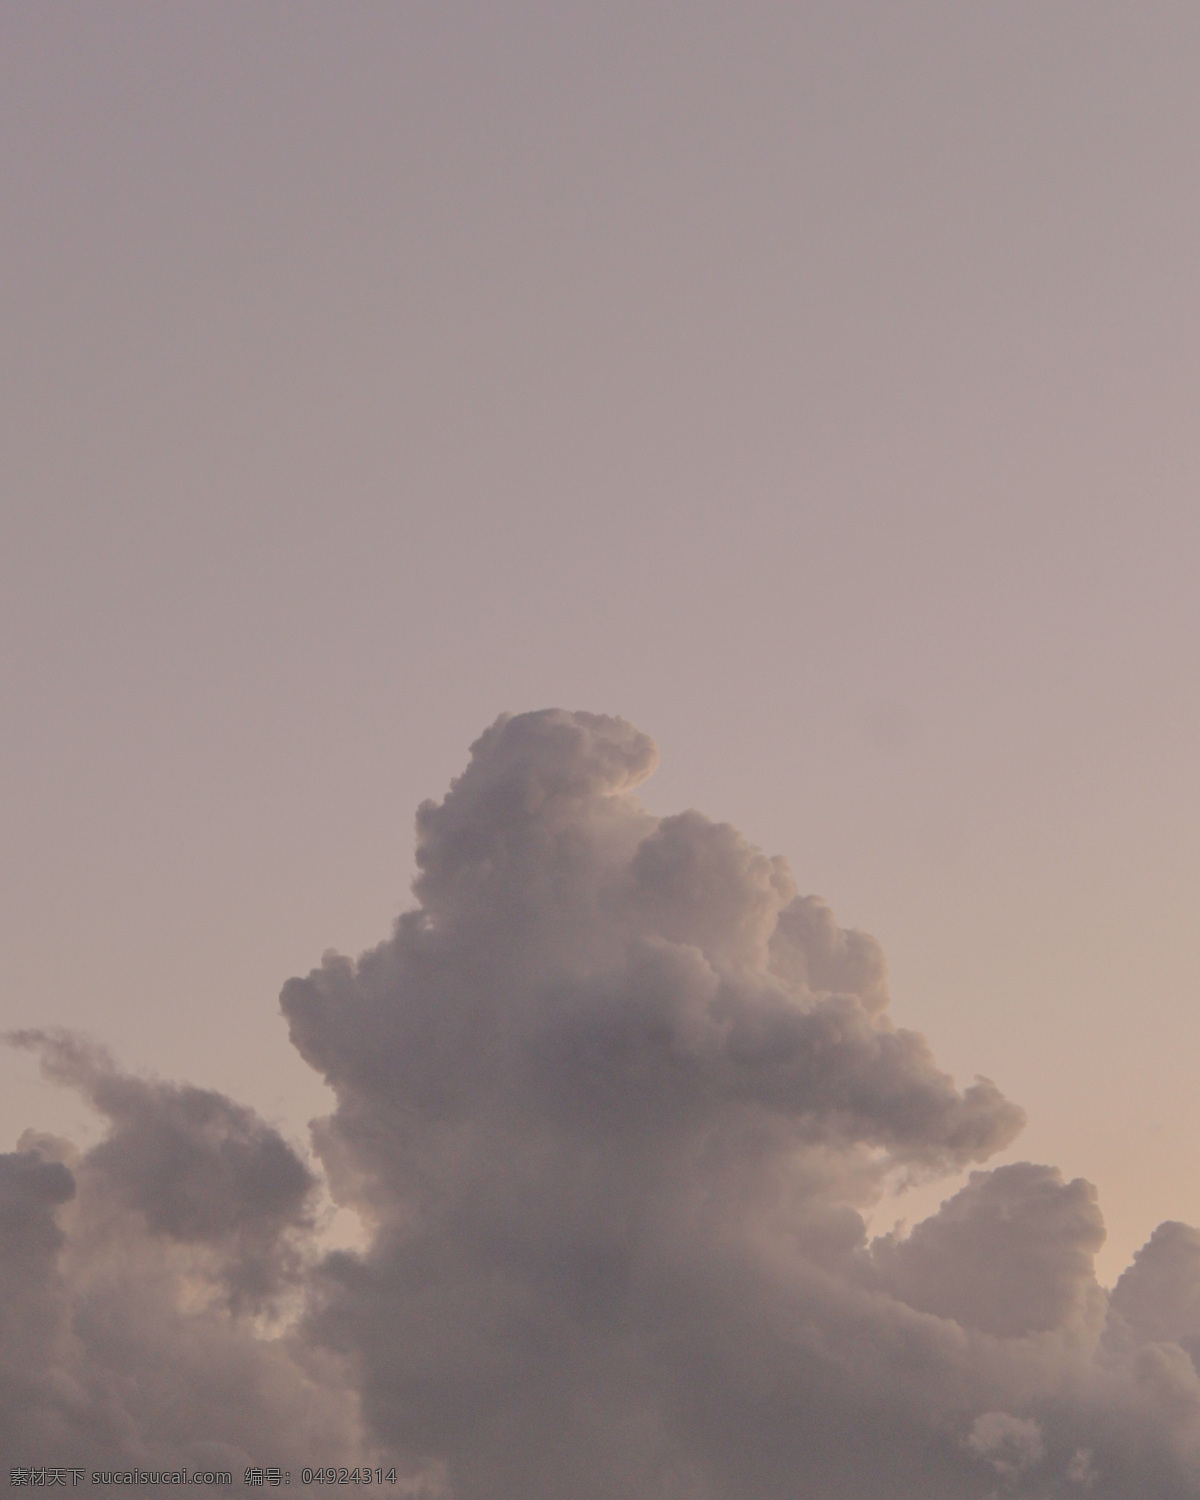 云朵 云 棉花 简单 简约 ins风 天空 傍晚 黄昏 背景素材 背景 插图 自然景观 自然风景